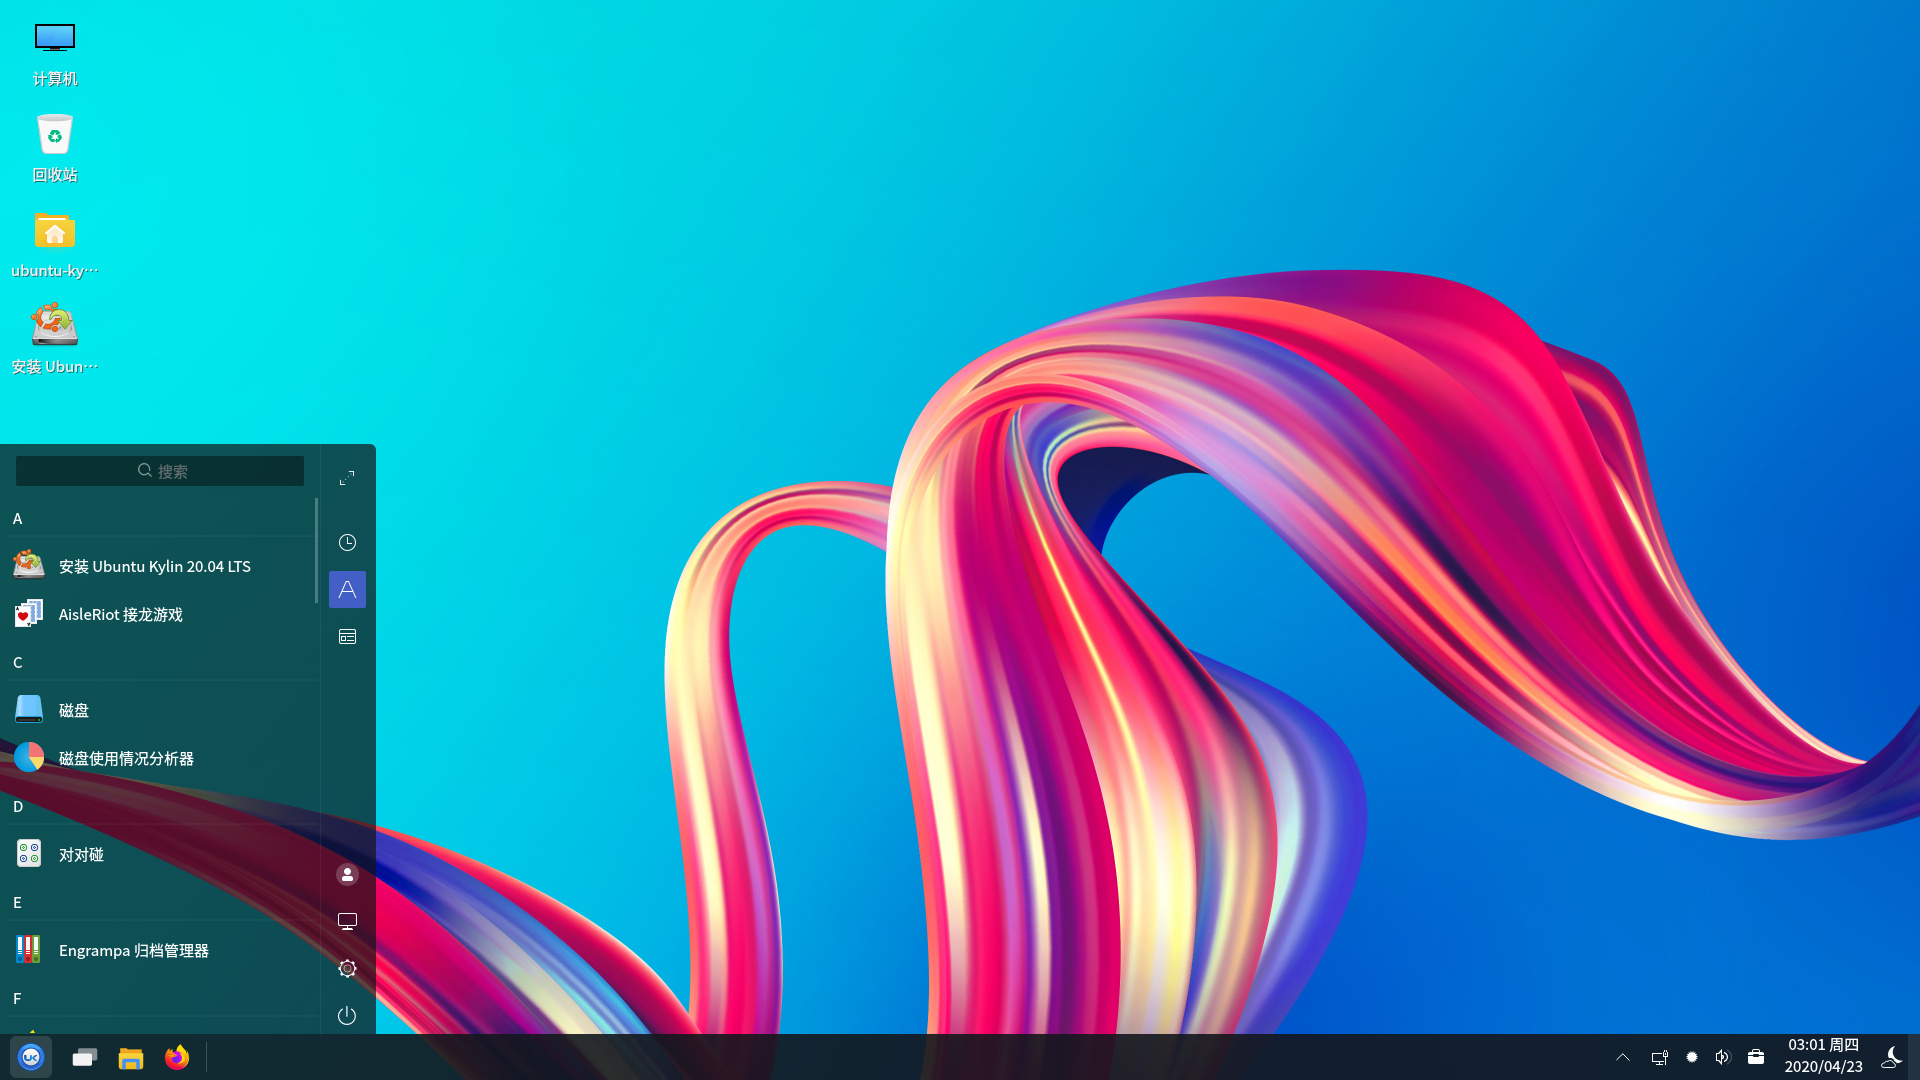 Ubuntu Kylin 20.4.1 LTS mit UKUI Desktop Environment 3.0